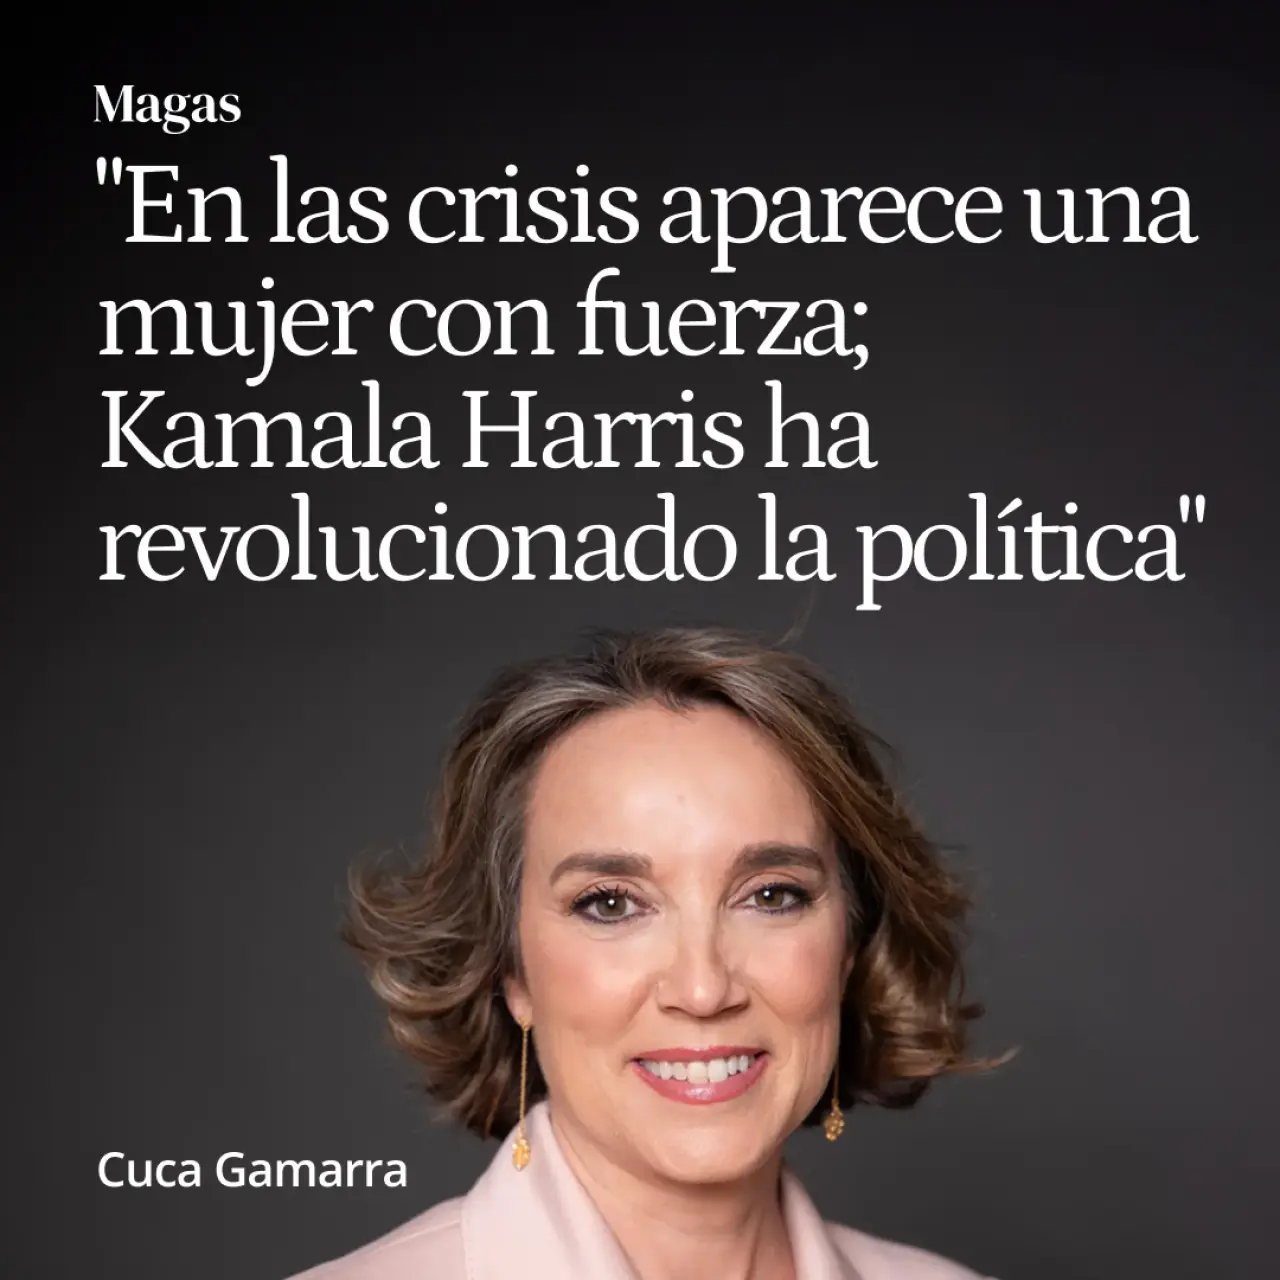 Cuca Gamarra: "Normalmente en las crisis aparece una mujer con fuerza; Kamala Harris ha revolucionado la política"